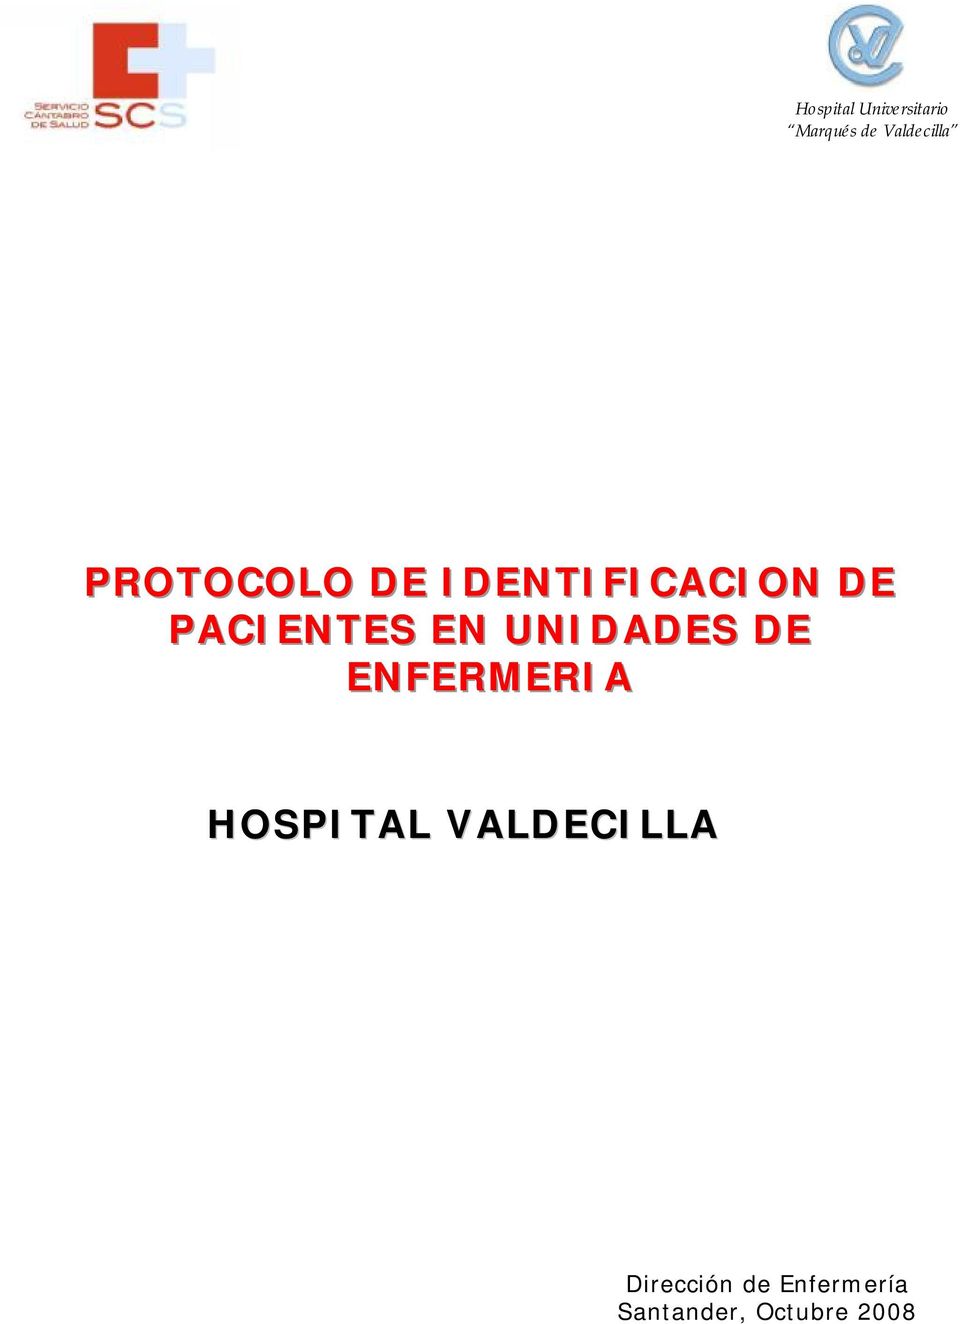 UNIDADES DE ENFERMERIA HOSPITAL VALDECILLA